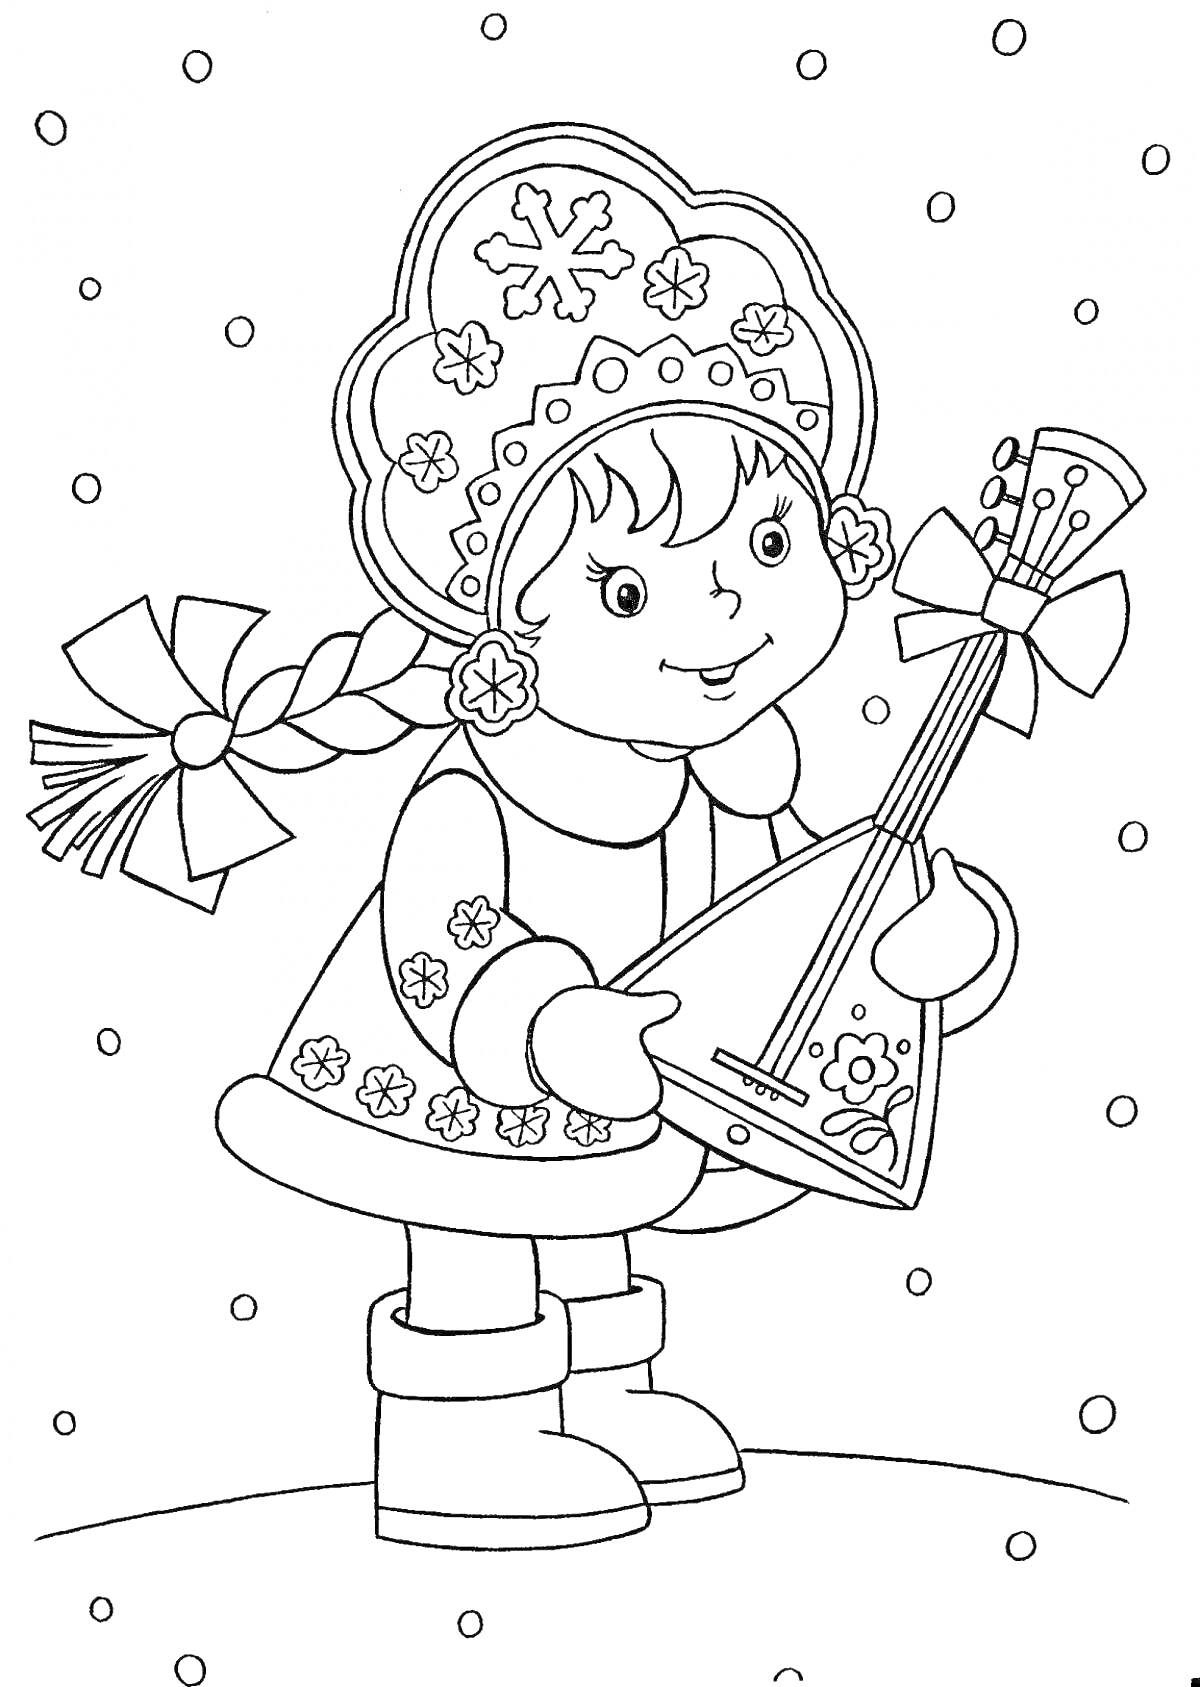 Девочка в зимней одежде со снегом и балалайкой